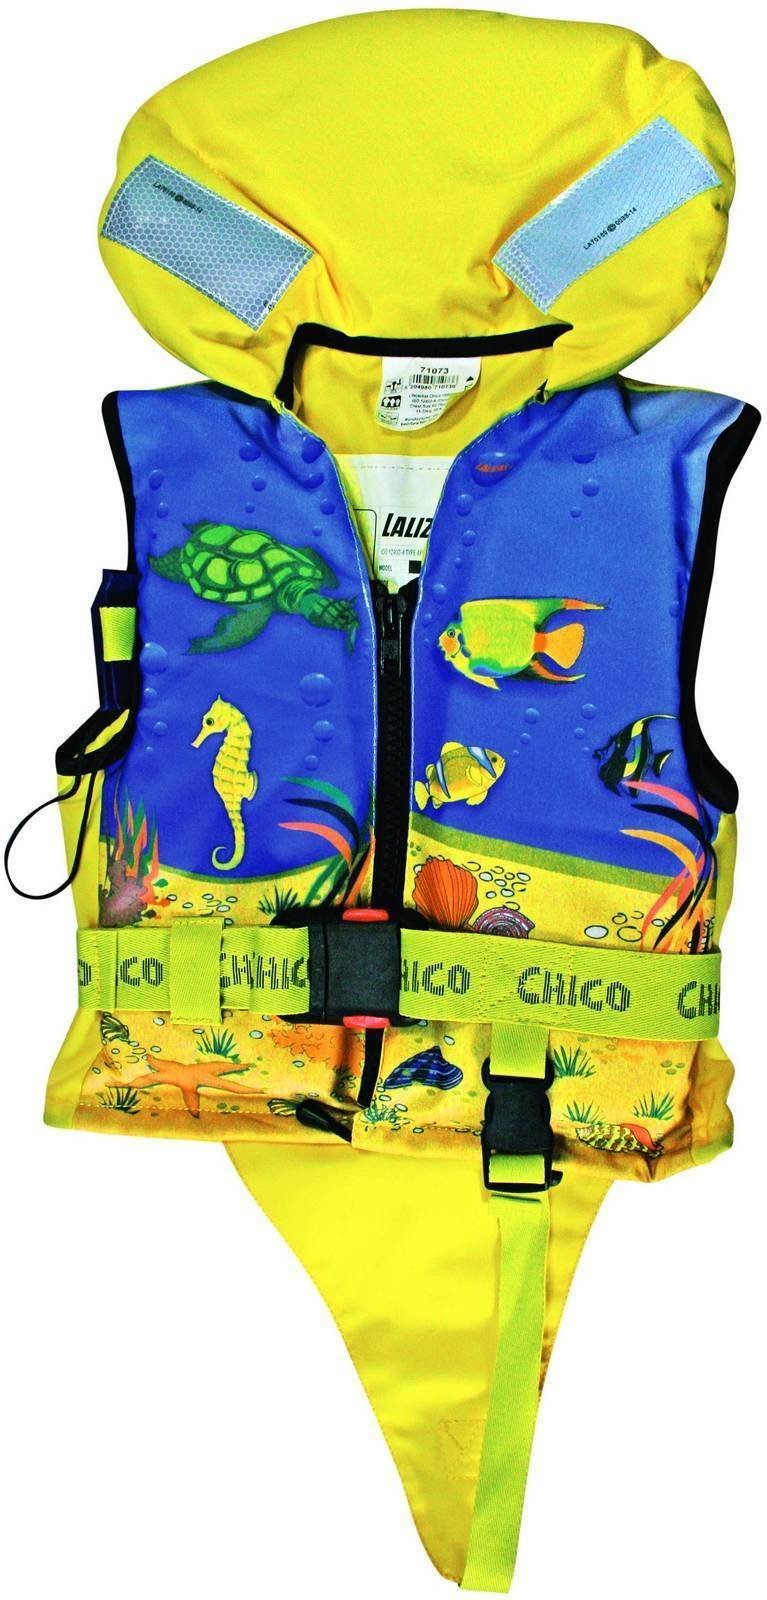 Rettungsweste Lalizas Chico Lifejacket 10-20kg